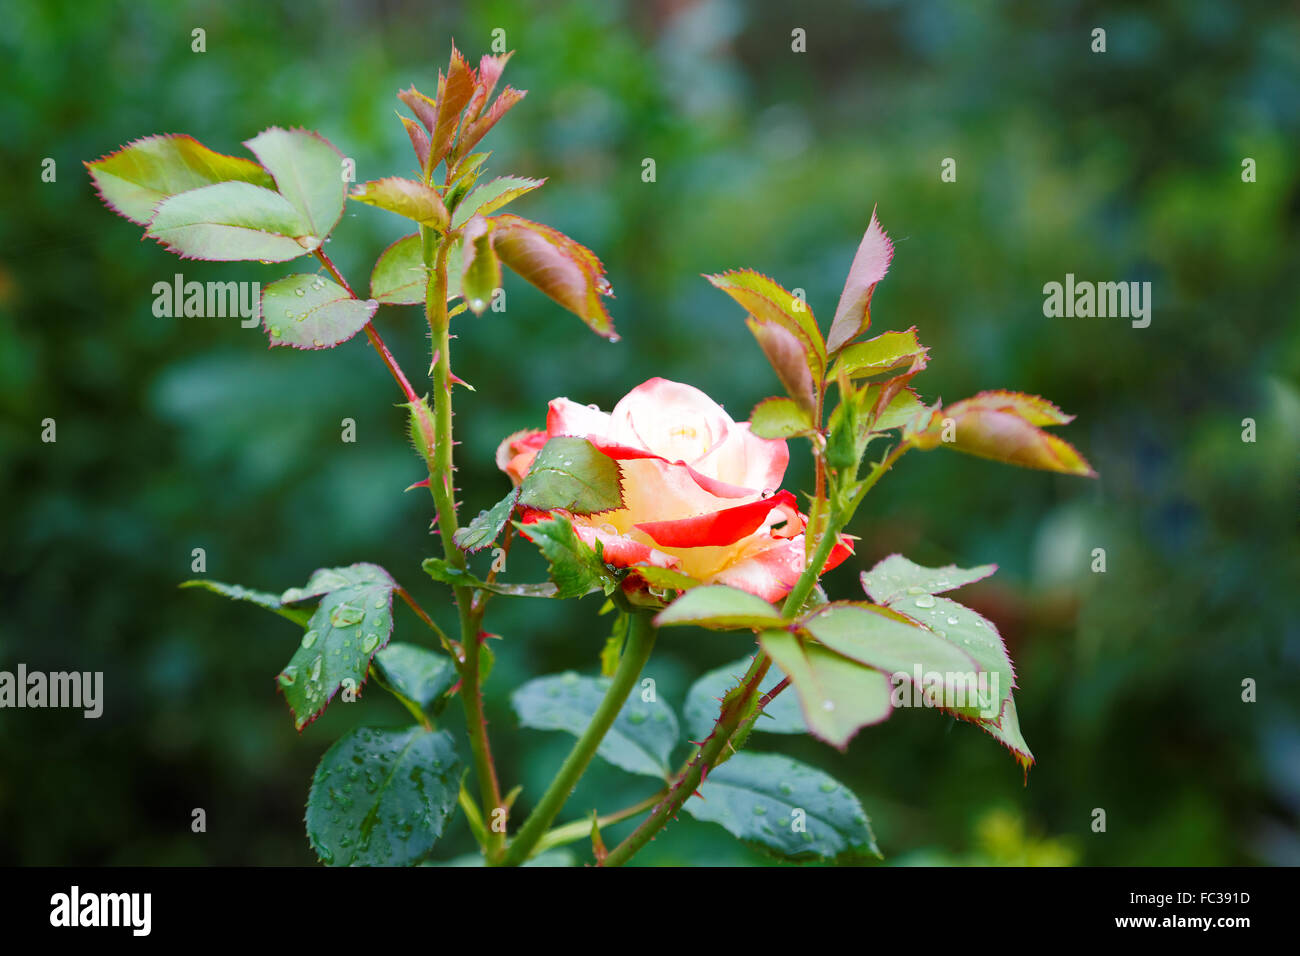 Rosa flor con gotas de agua en verano Foto de stock